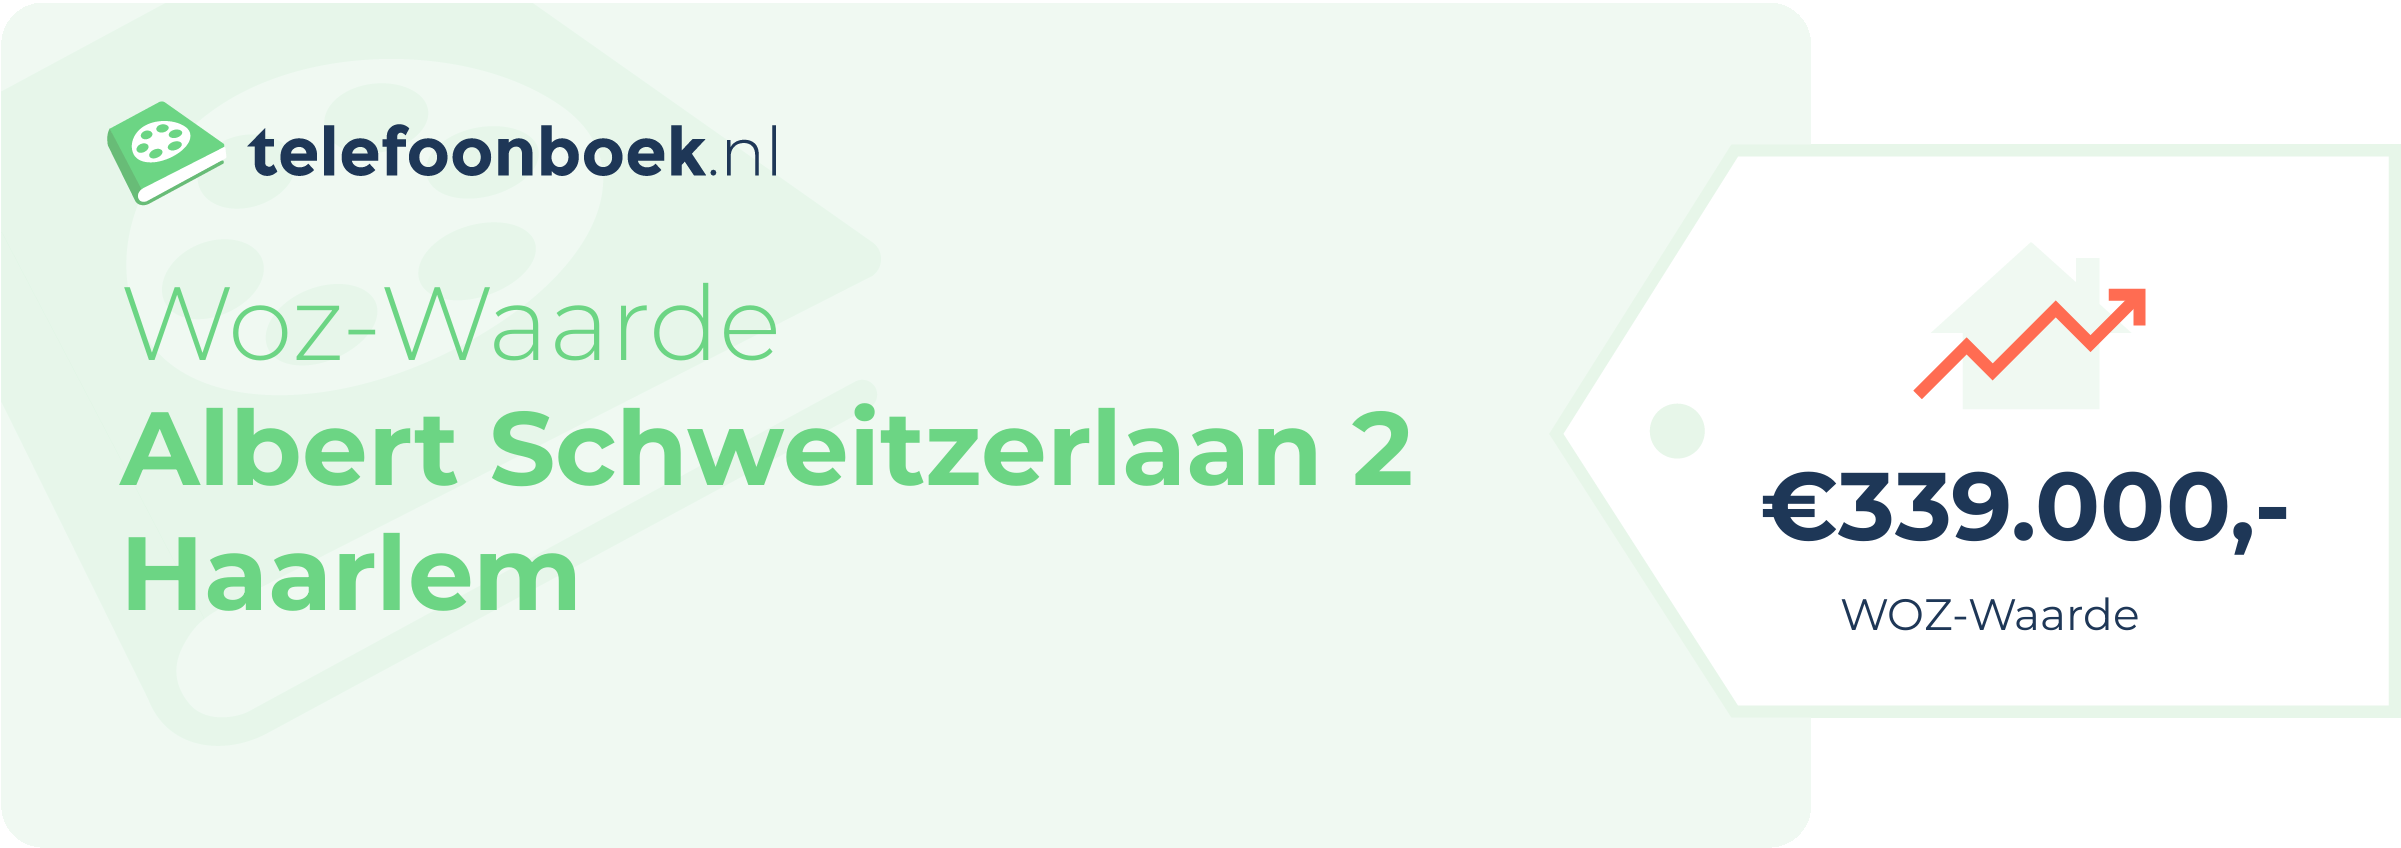 WOZ-waarde Albert Schweitzerlaan 2 Haarlem